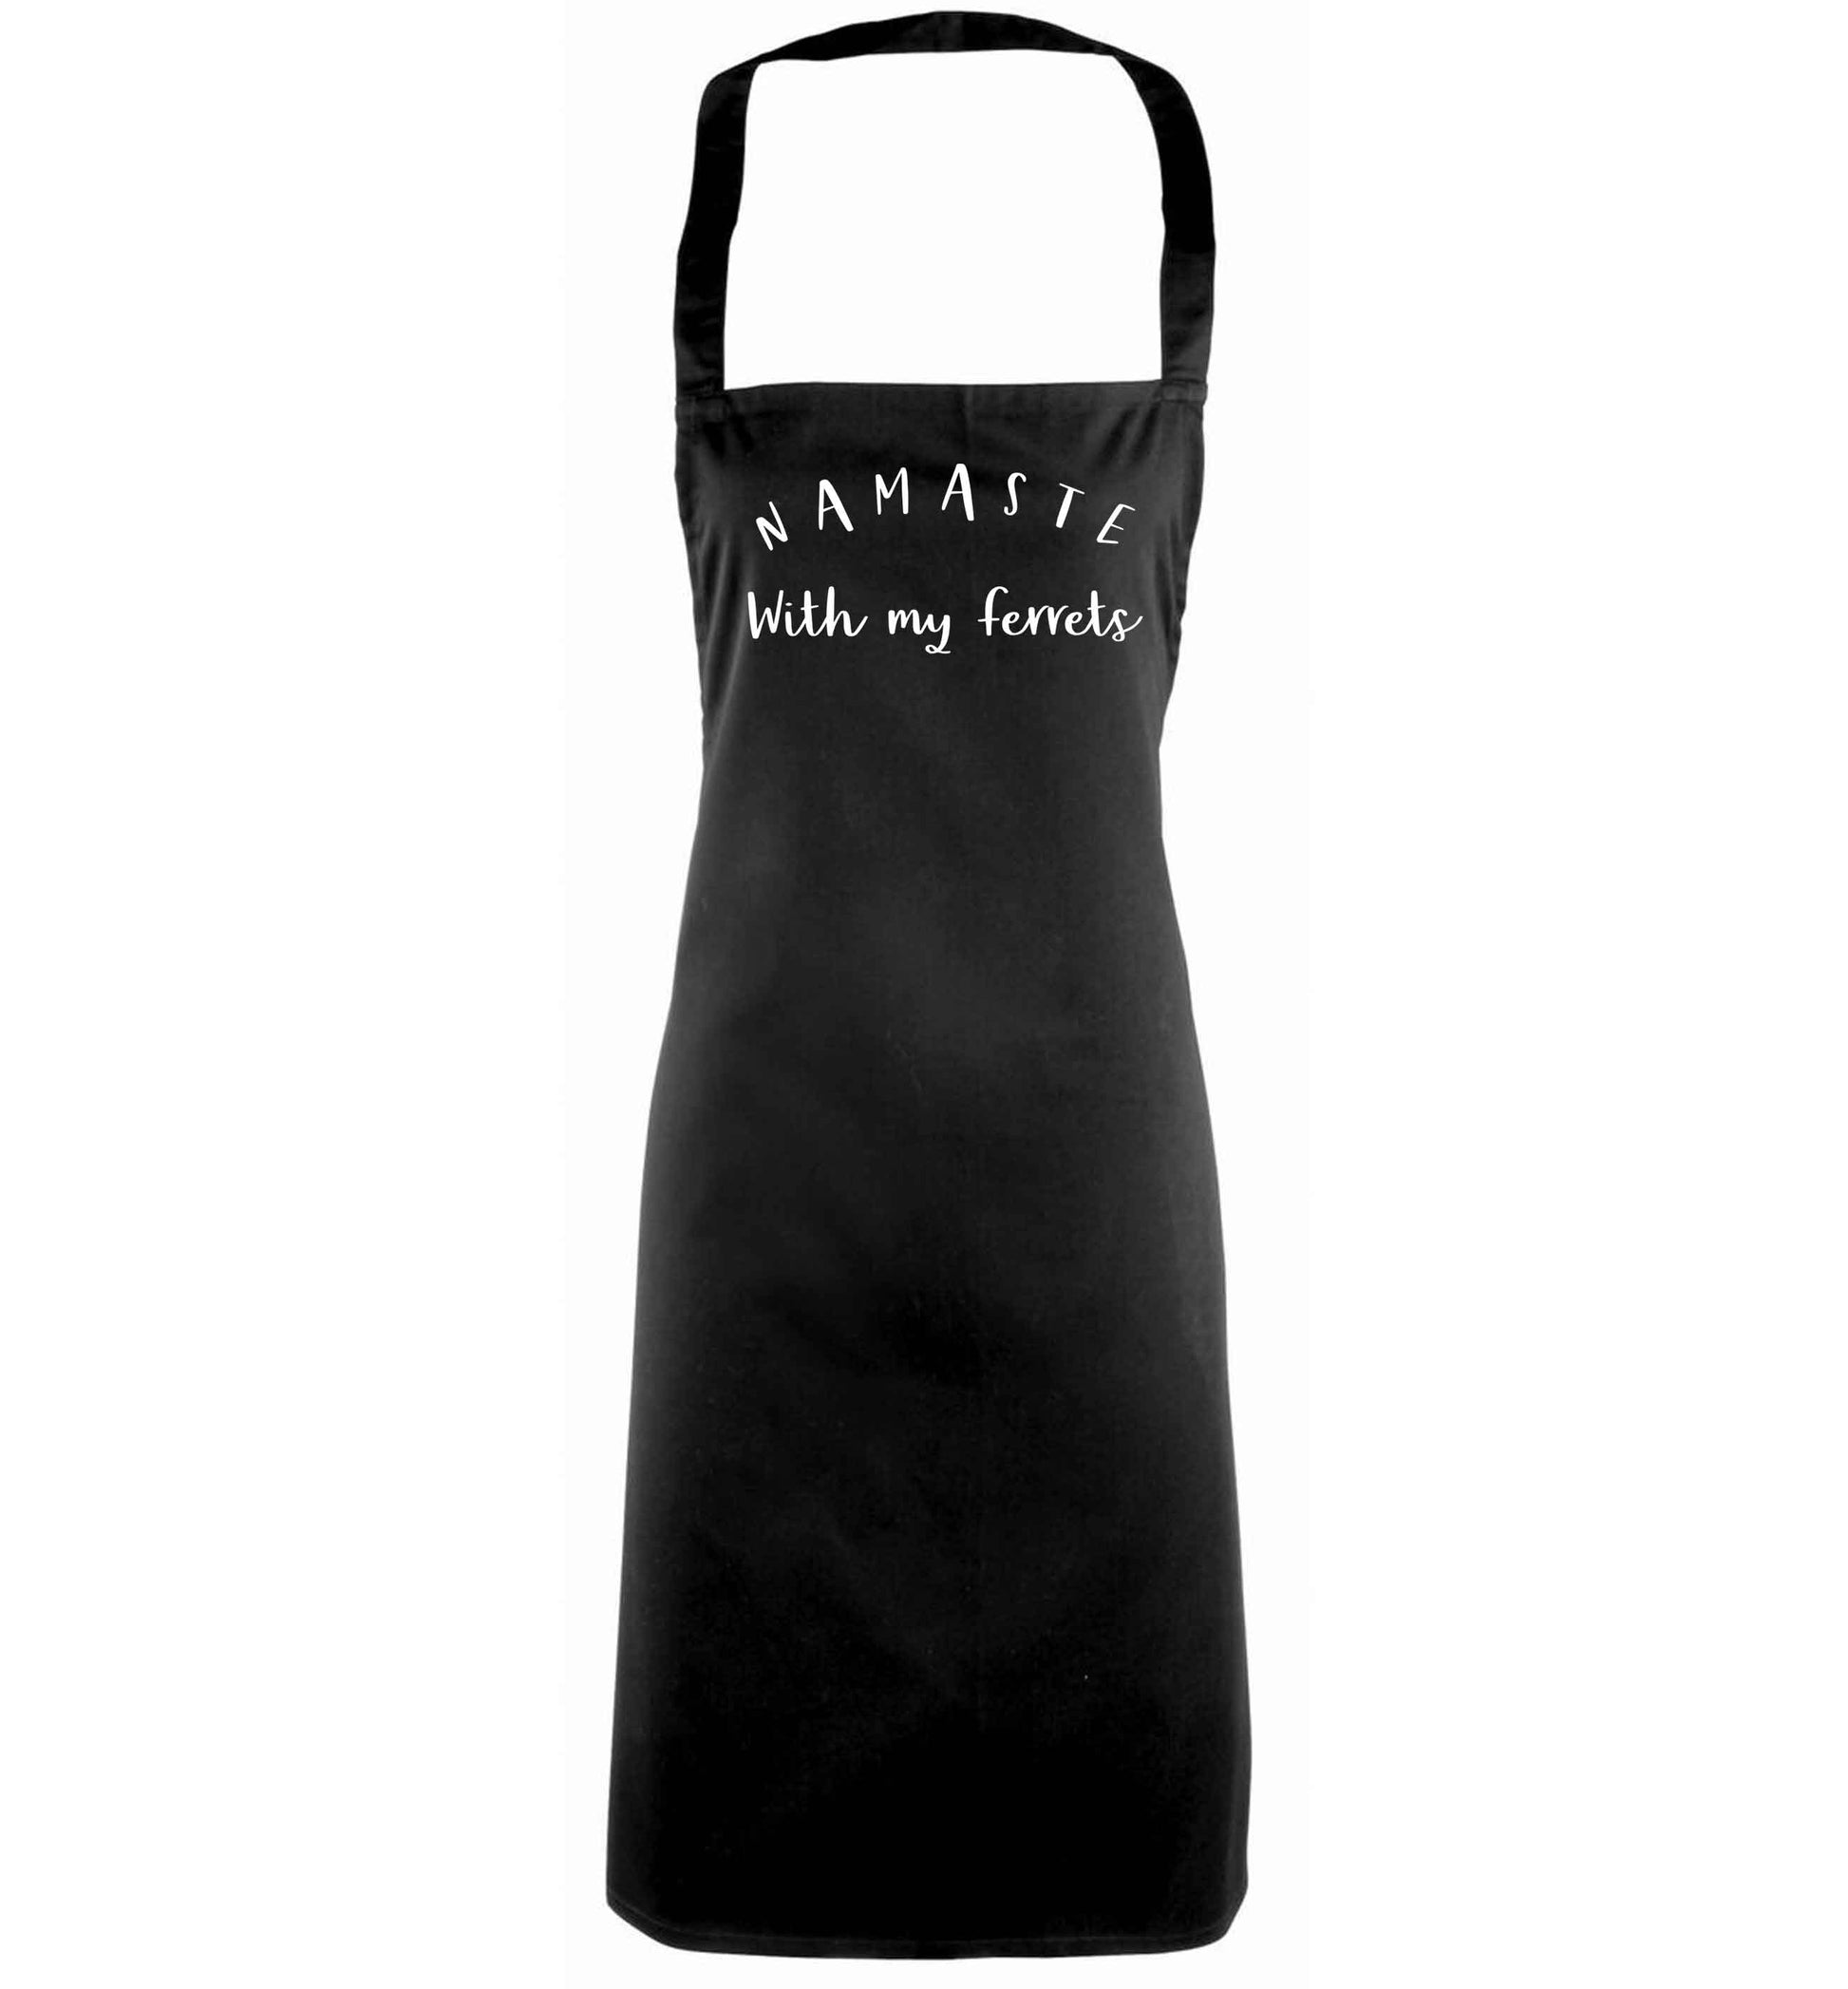 Namaste with my ferrets black apron